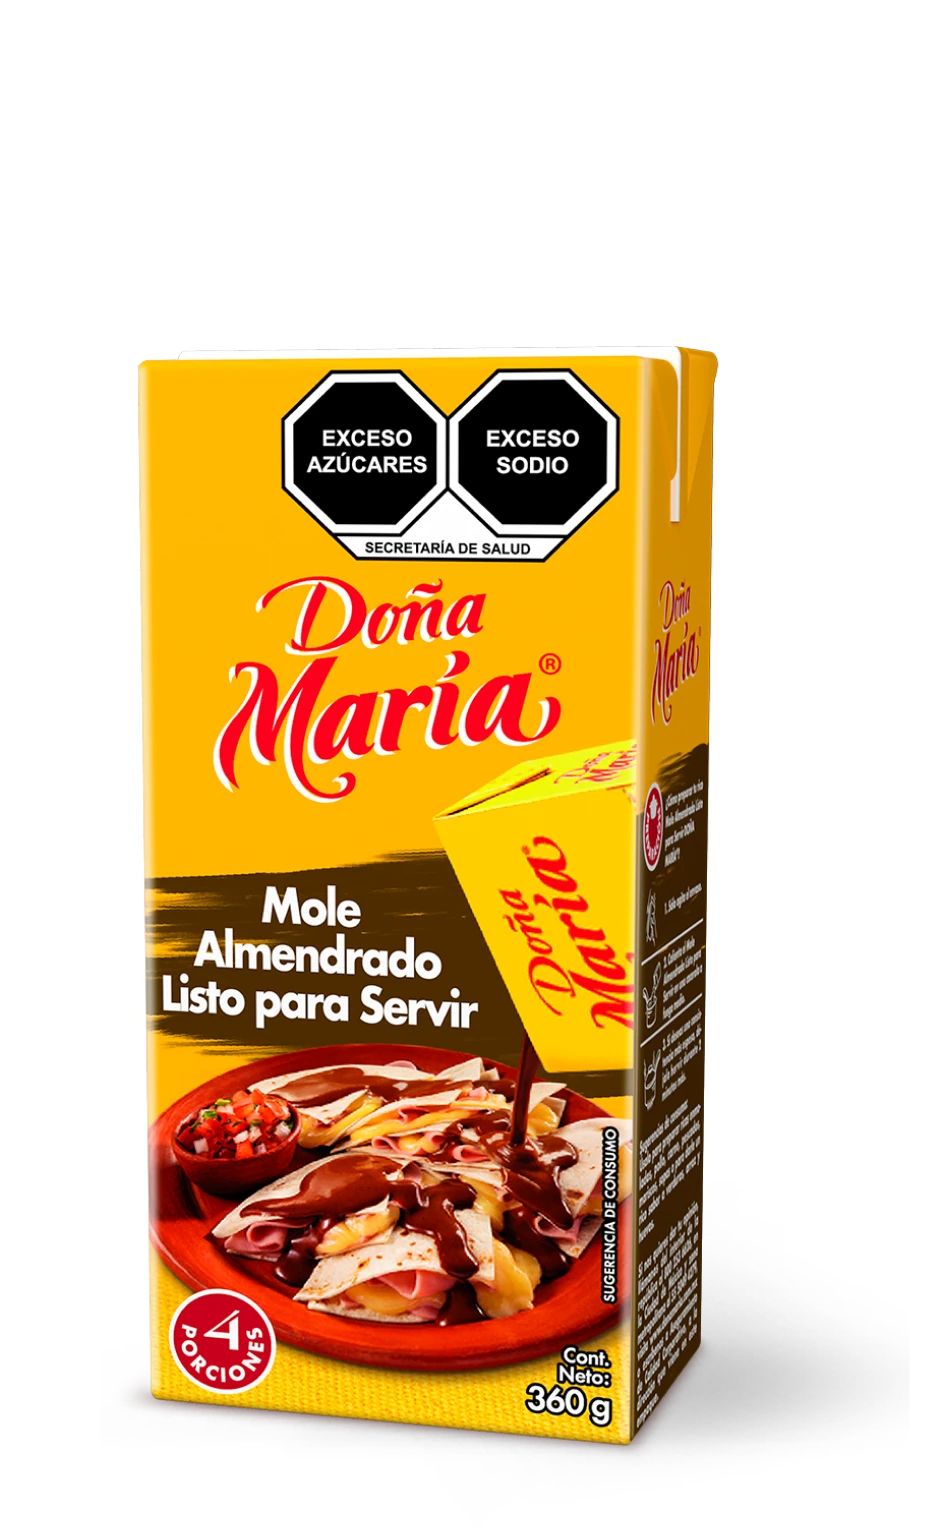 Product Mole Almendrado Doña María ®